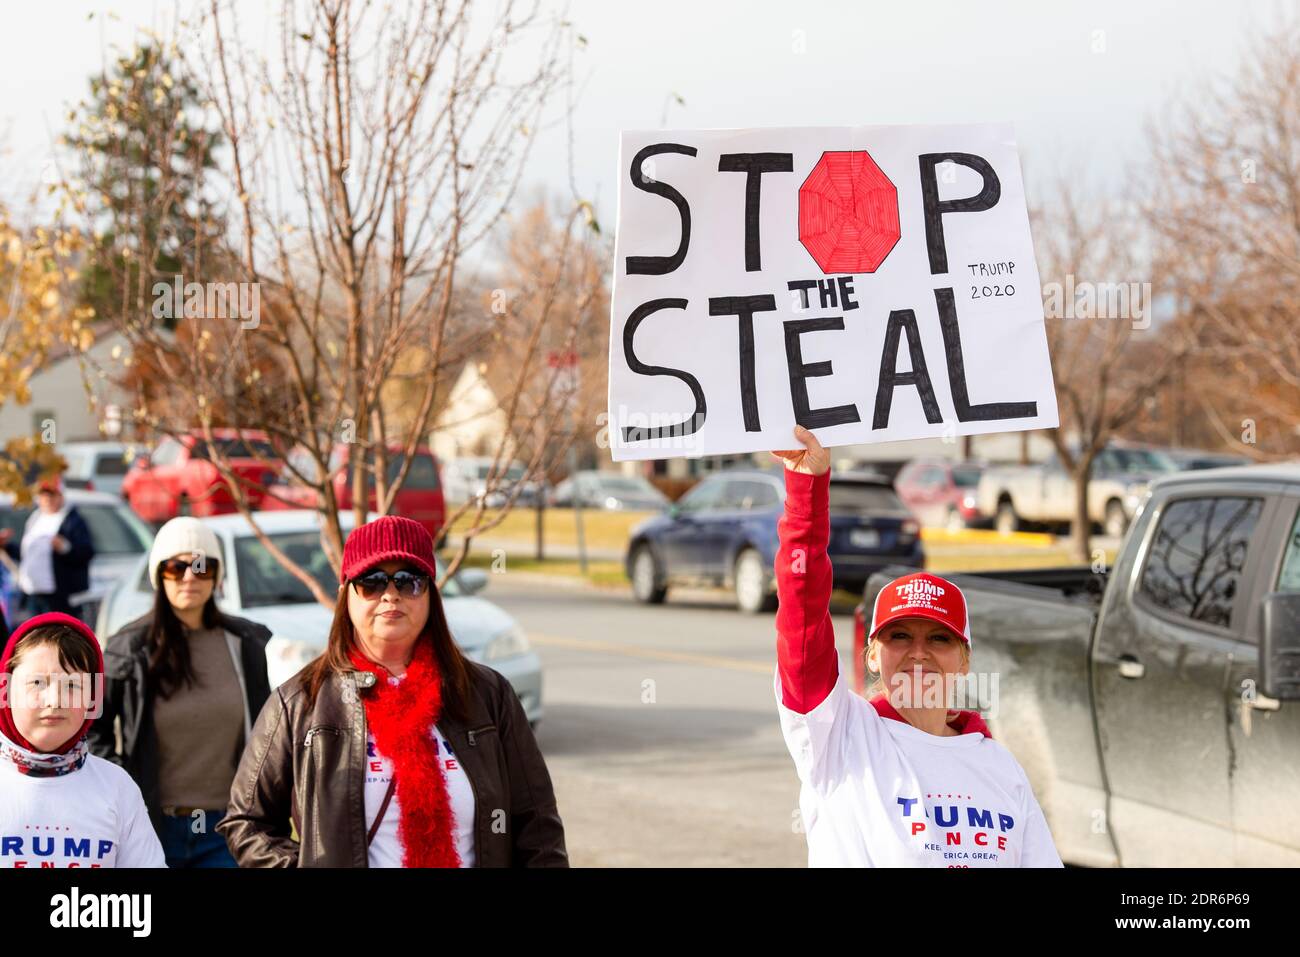 Helena, Montana - 7 de noviembre de 2020: Mujer protestando en el cartel de la celebración del mitin Stop the Steal, usando el equipo de Trump 2020 creyendo que la elección fue robada de D Foto de stock